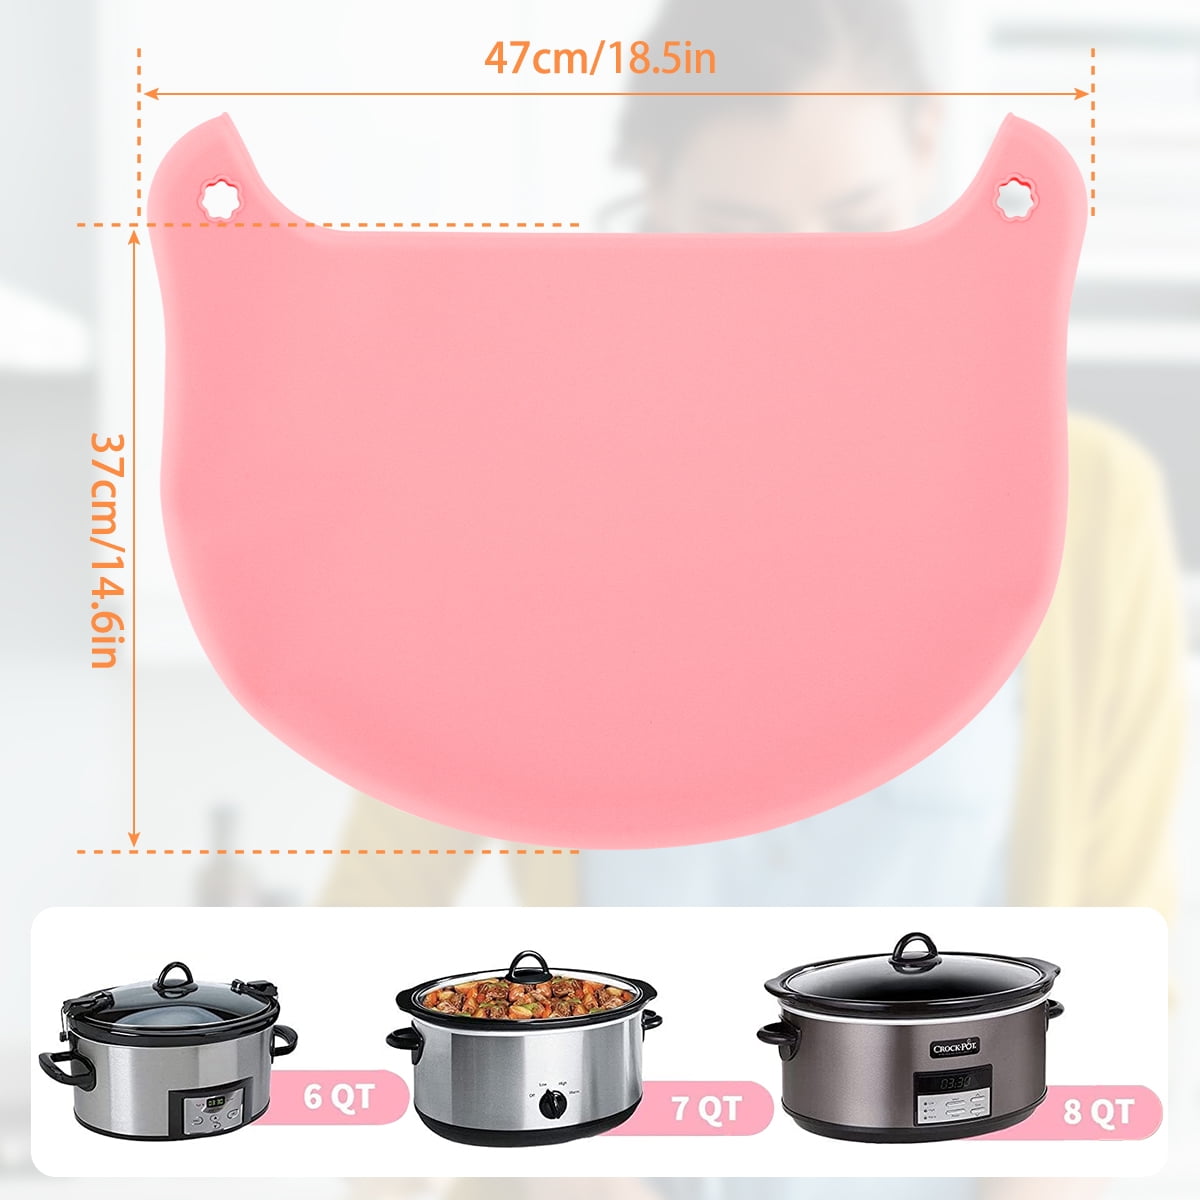  Silicone Crock Pot Liner-Crockpot Divider Insert Fit 6-8  Quarts, Reusable Slow Cooker Silicone Liner, Foldable&Dishwasher Safe  (Blue+Pink): Home & Kitchen